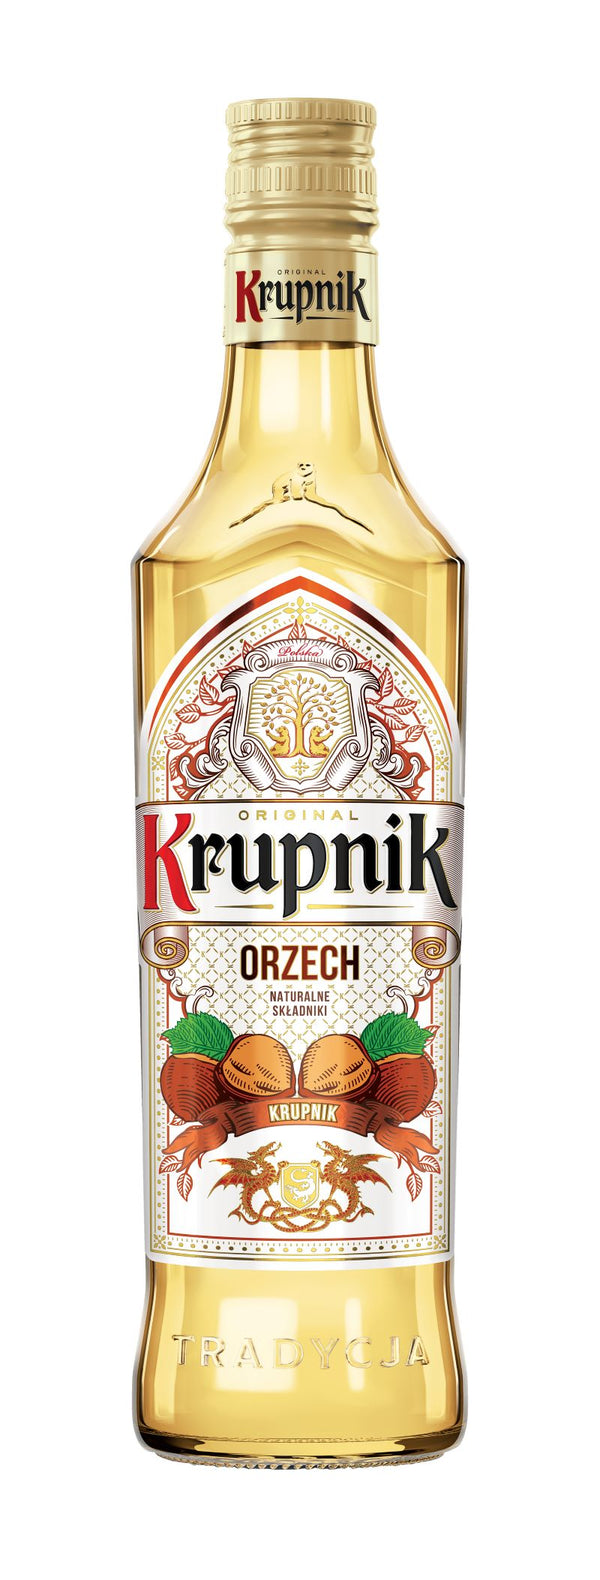 Krupnik Orzech (Nut)